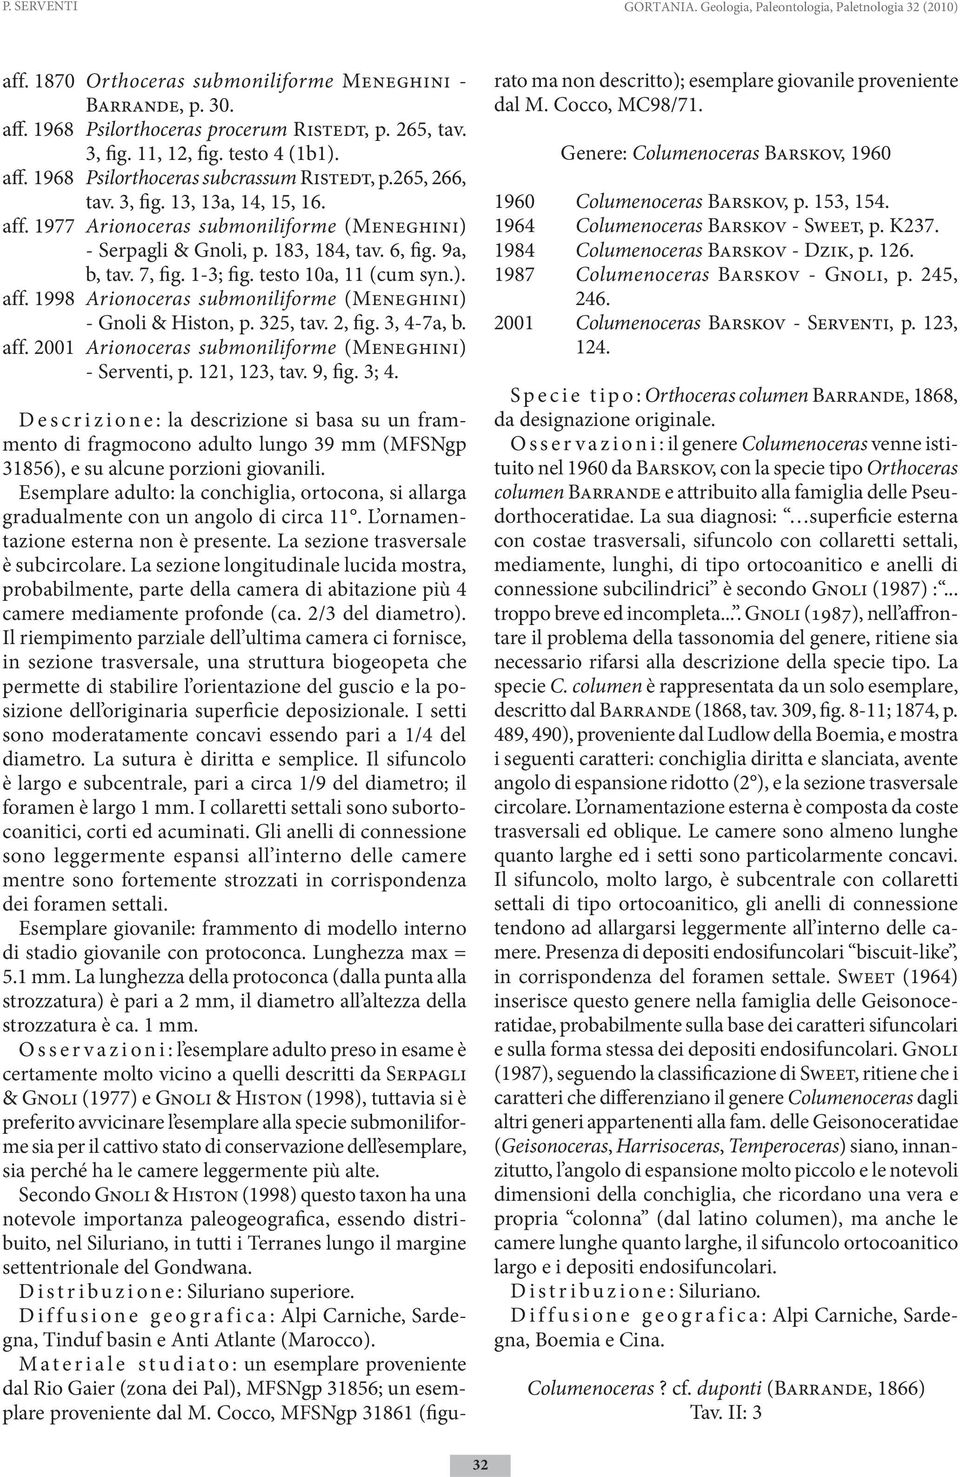 183, 184, tav. 6, fig. 9a, b, tav. 7, fig. 1-3; fig. testo 10a, 11 (cum syn.). aff. 1998 Arionoceras submoniliforme (Meneghini) - Gnoli & Histon, p. 325, tav. 2, fig. 3, 4-7a, b. aff. 2001 Arionoceras submoniliforme (Meneghini) - Serventi, p.